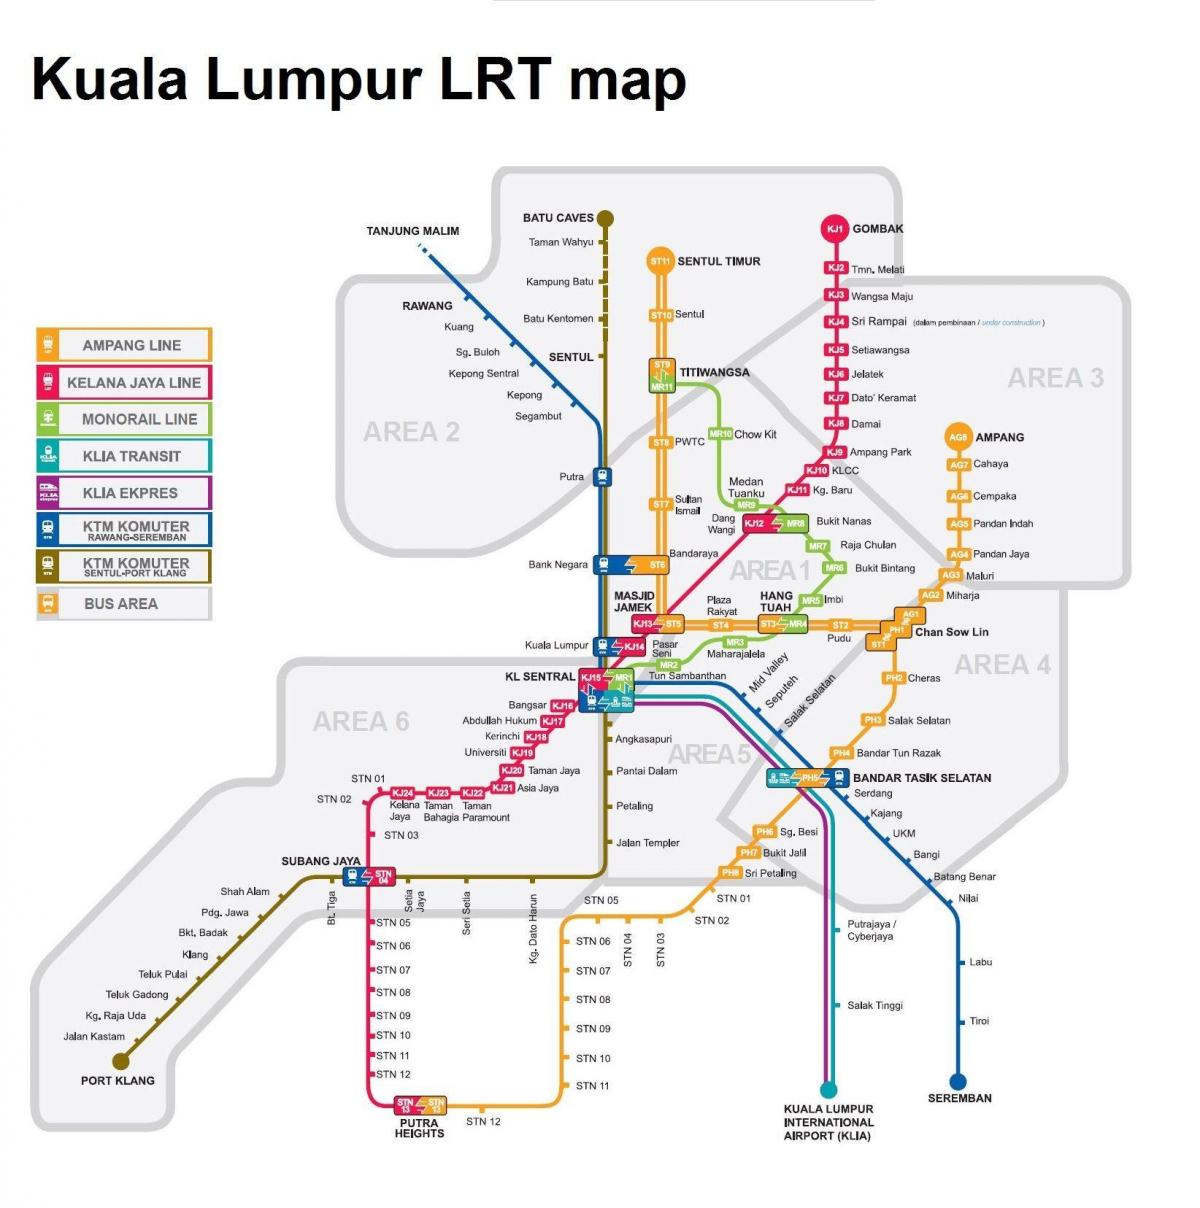 lrt harta malaezia 2016